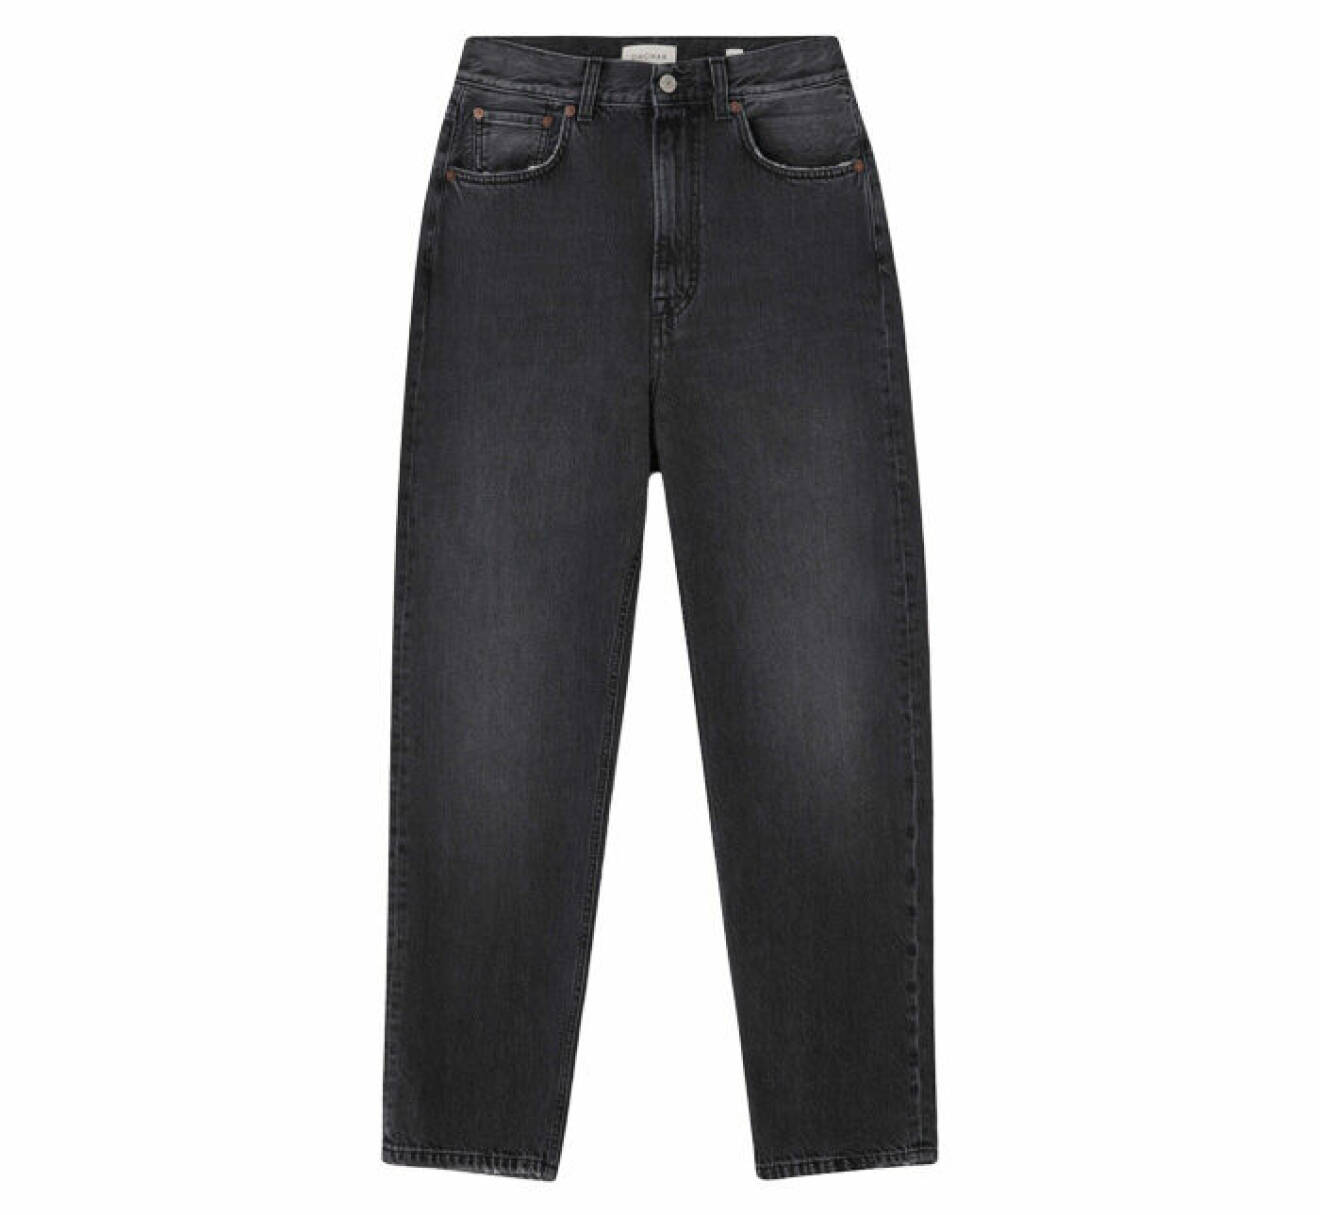 grå jeans med något avsmalnade ben nertill och hög midja från Dagmar